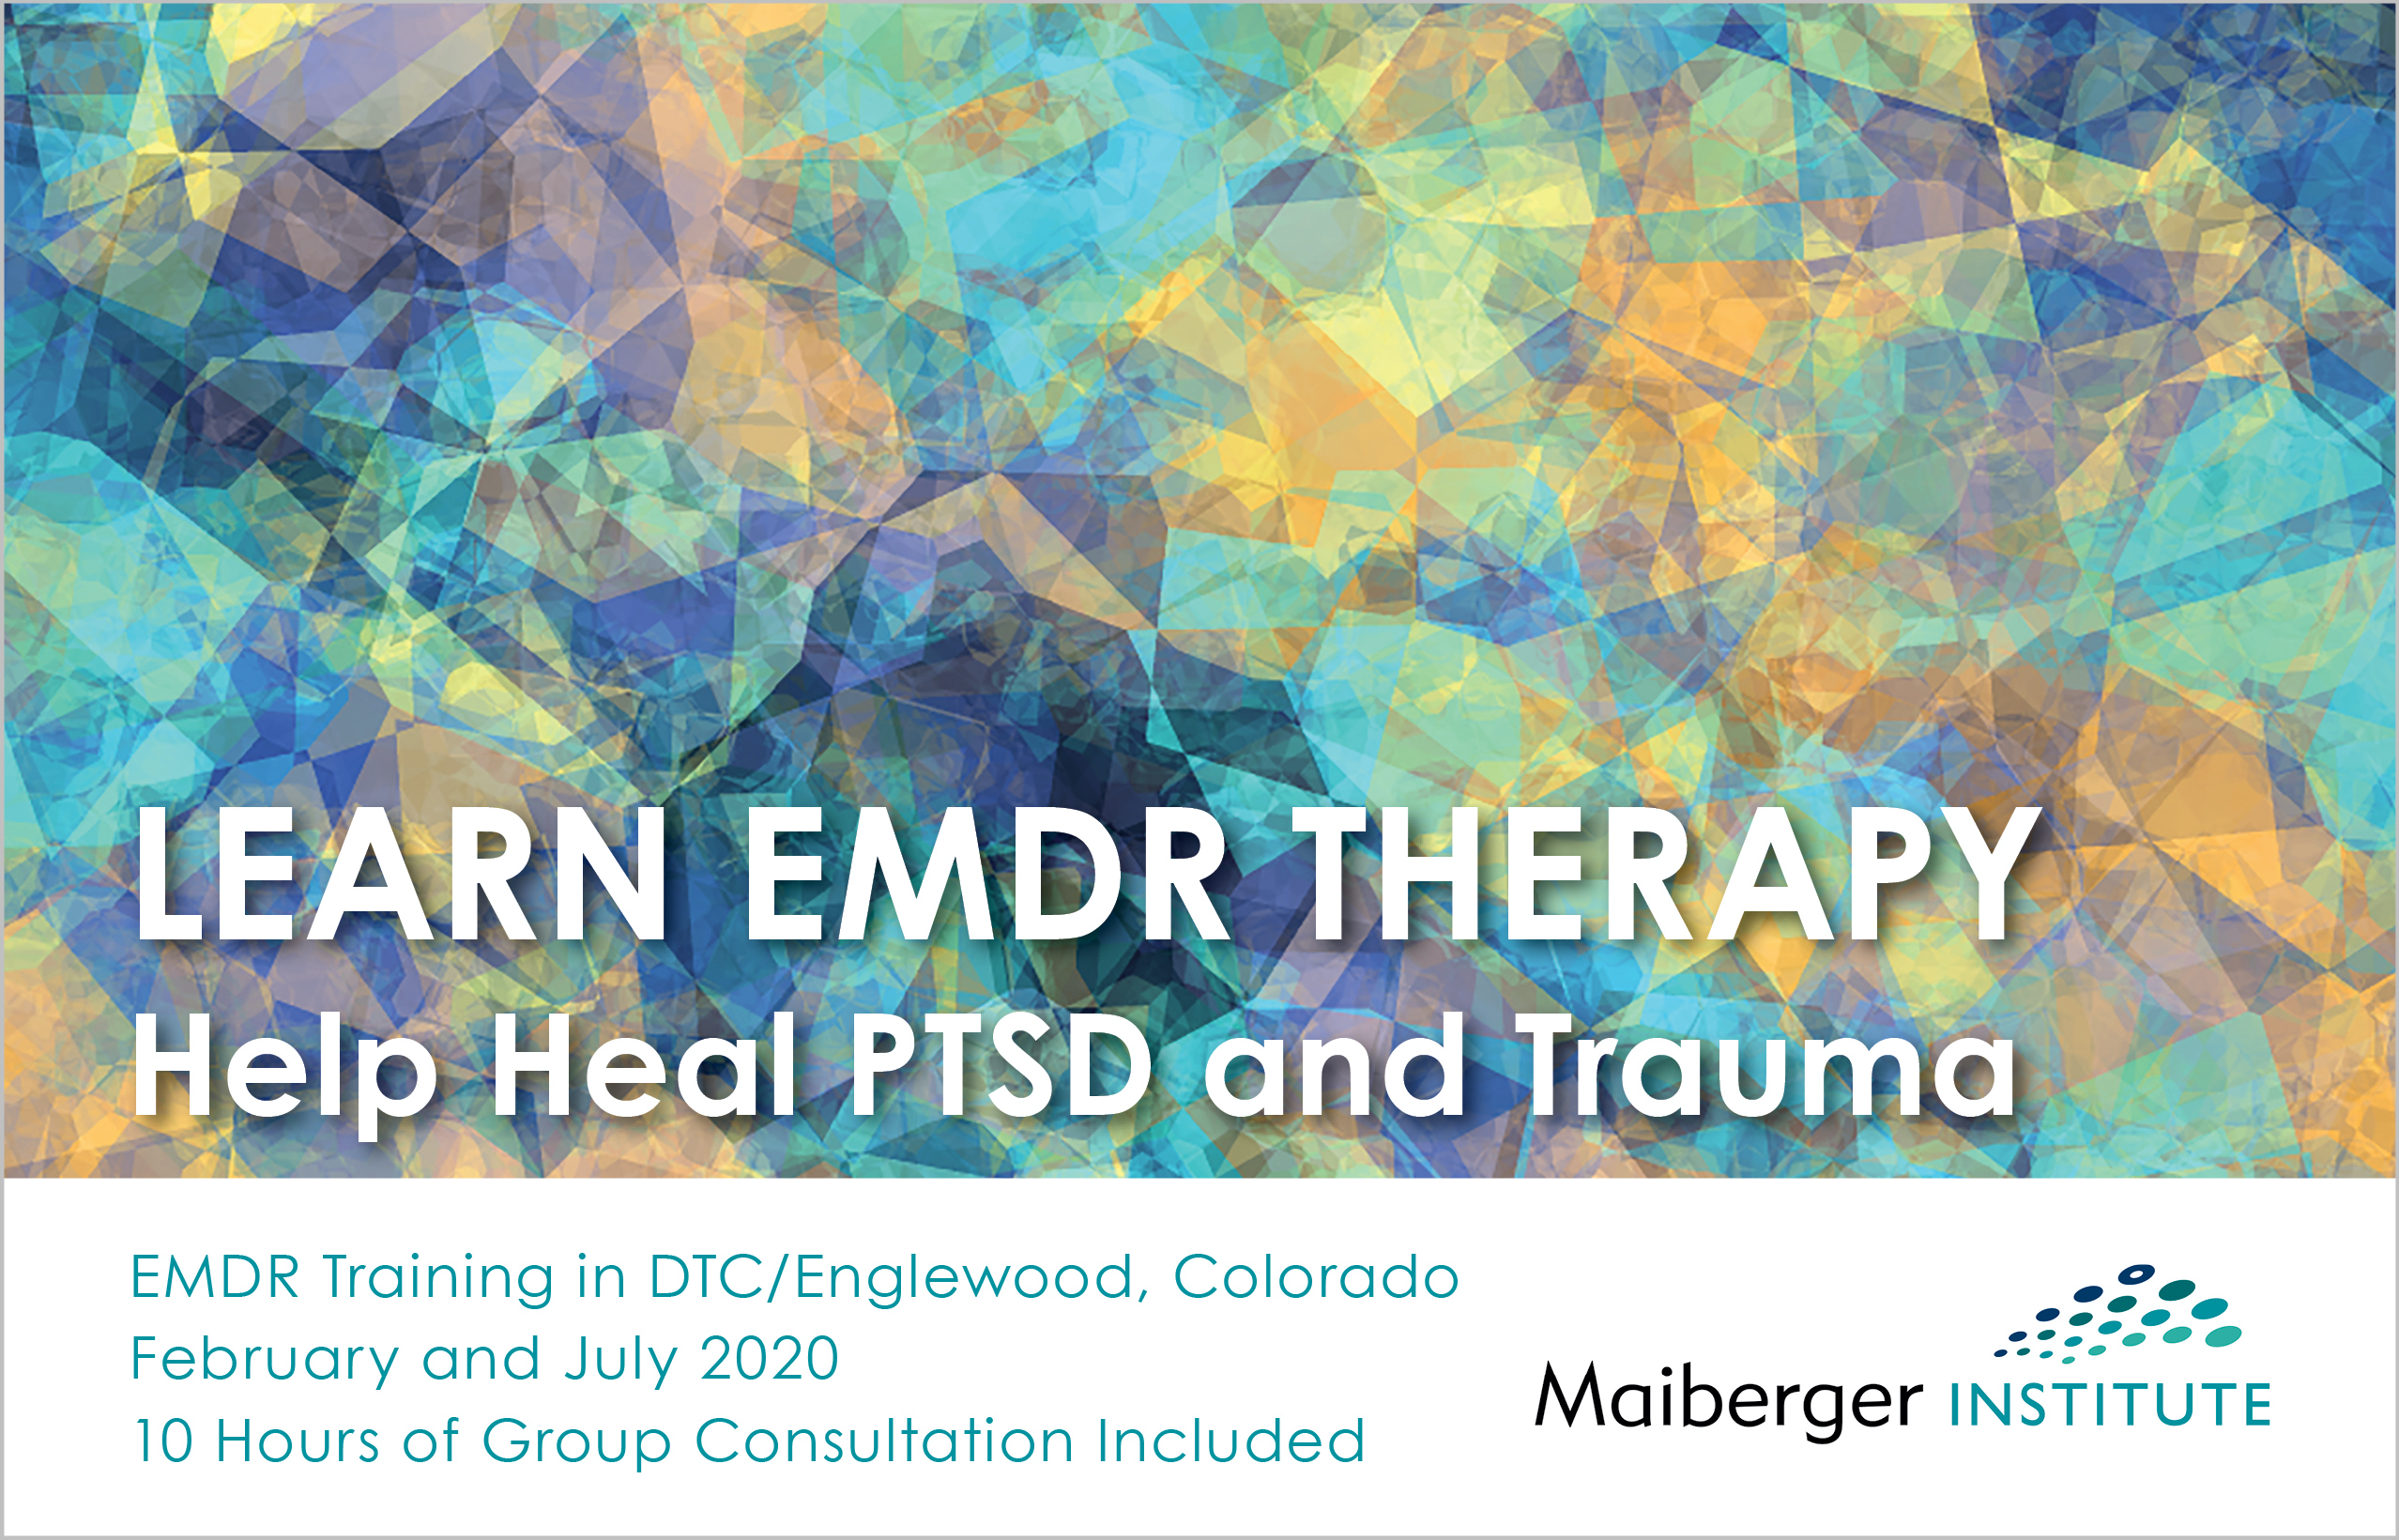 EMDR Training in Denver Tech Center Colorado - February and July 2020 - EMDR Events Calendar - Maiberger Institute